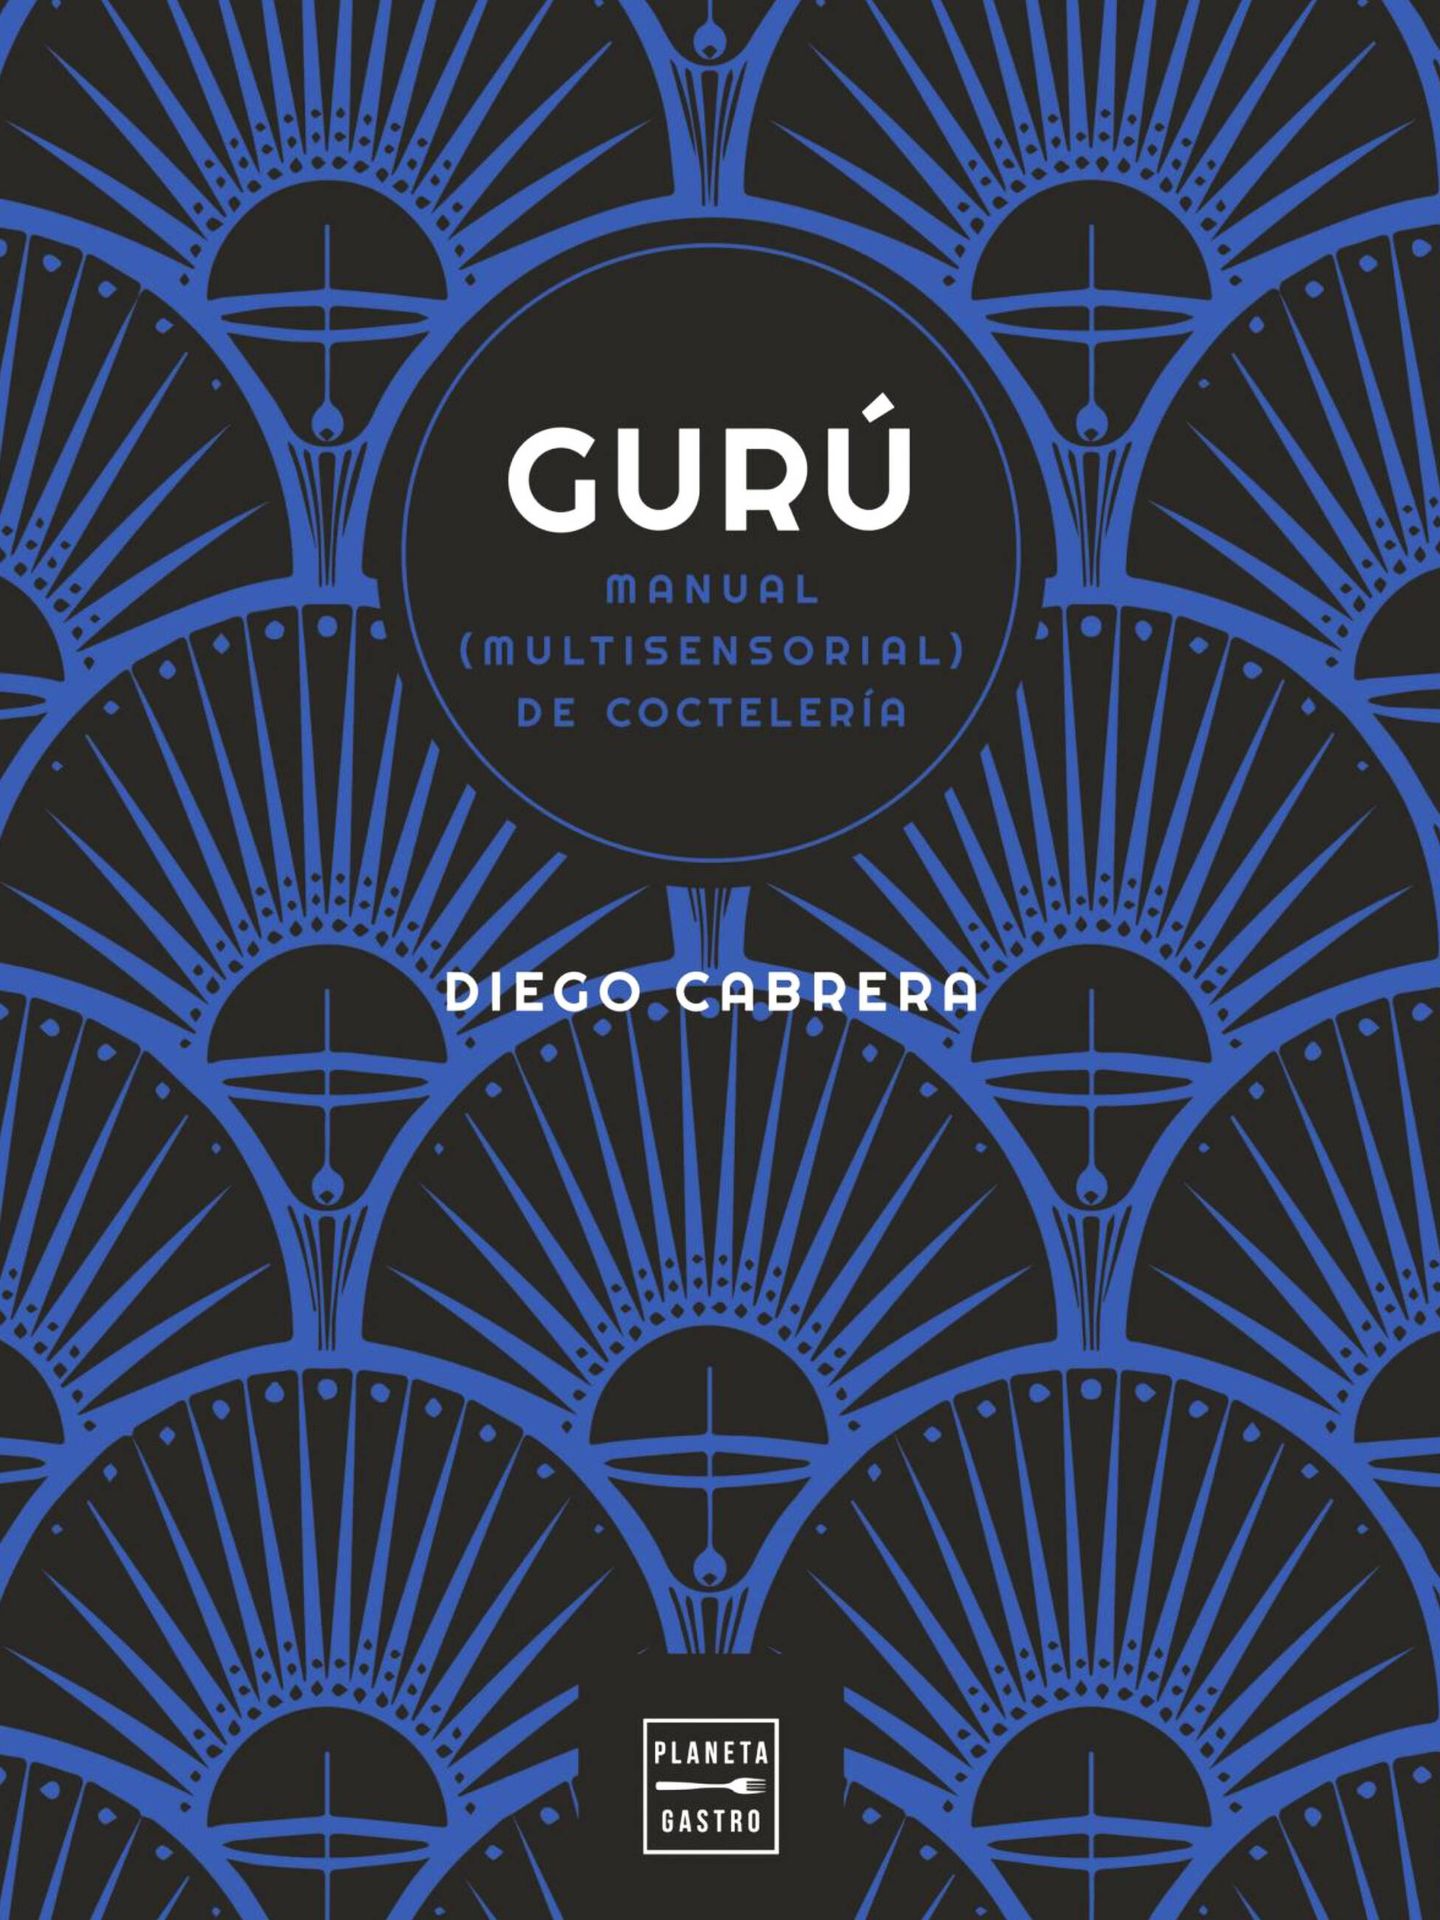 'Gurú: Manual (multisensorial) de coctelería', de Diego Cabrera. (Planeta)